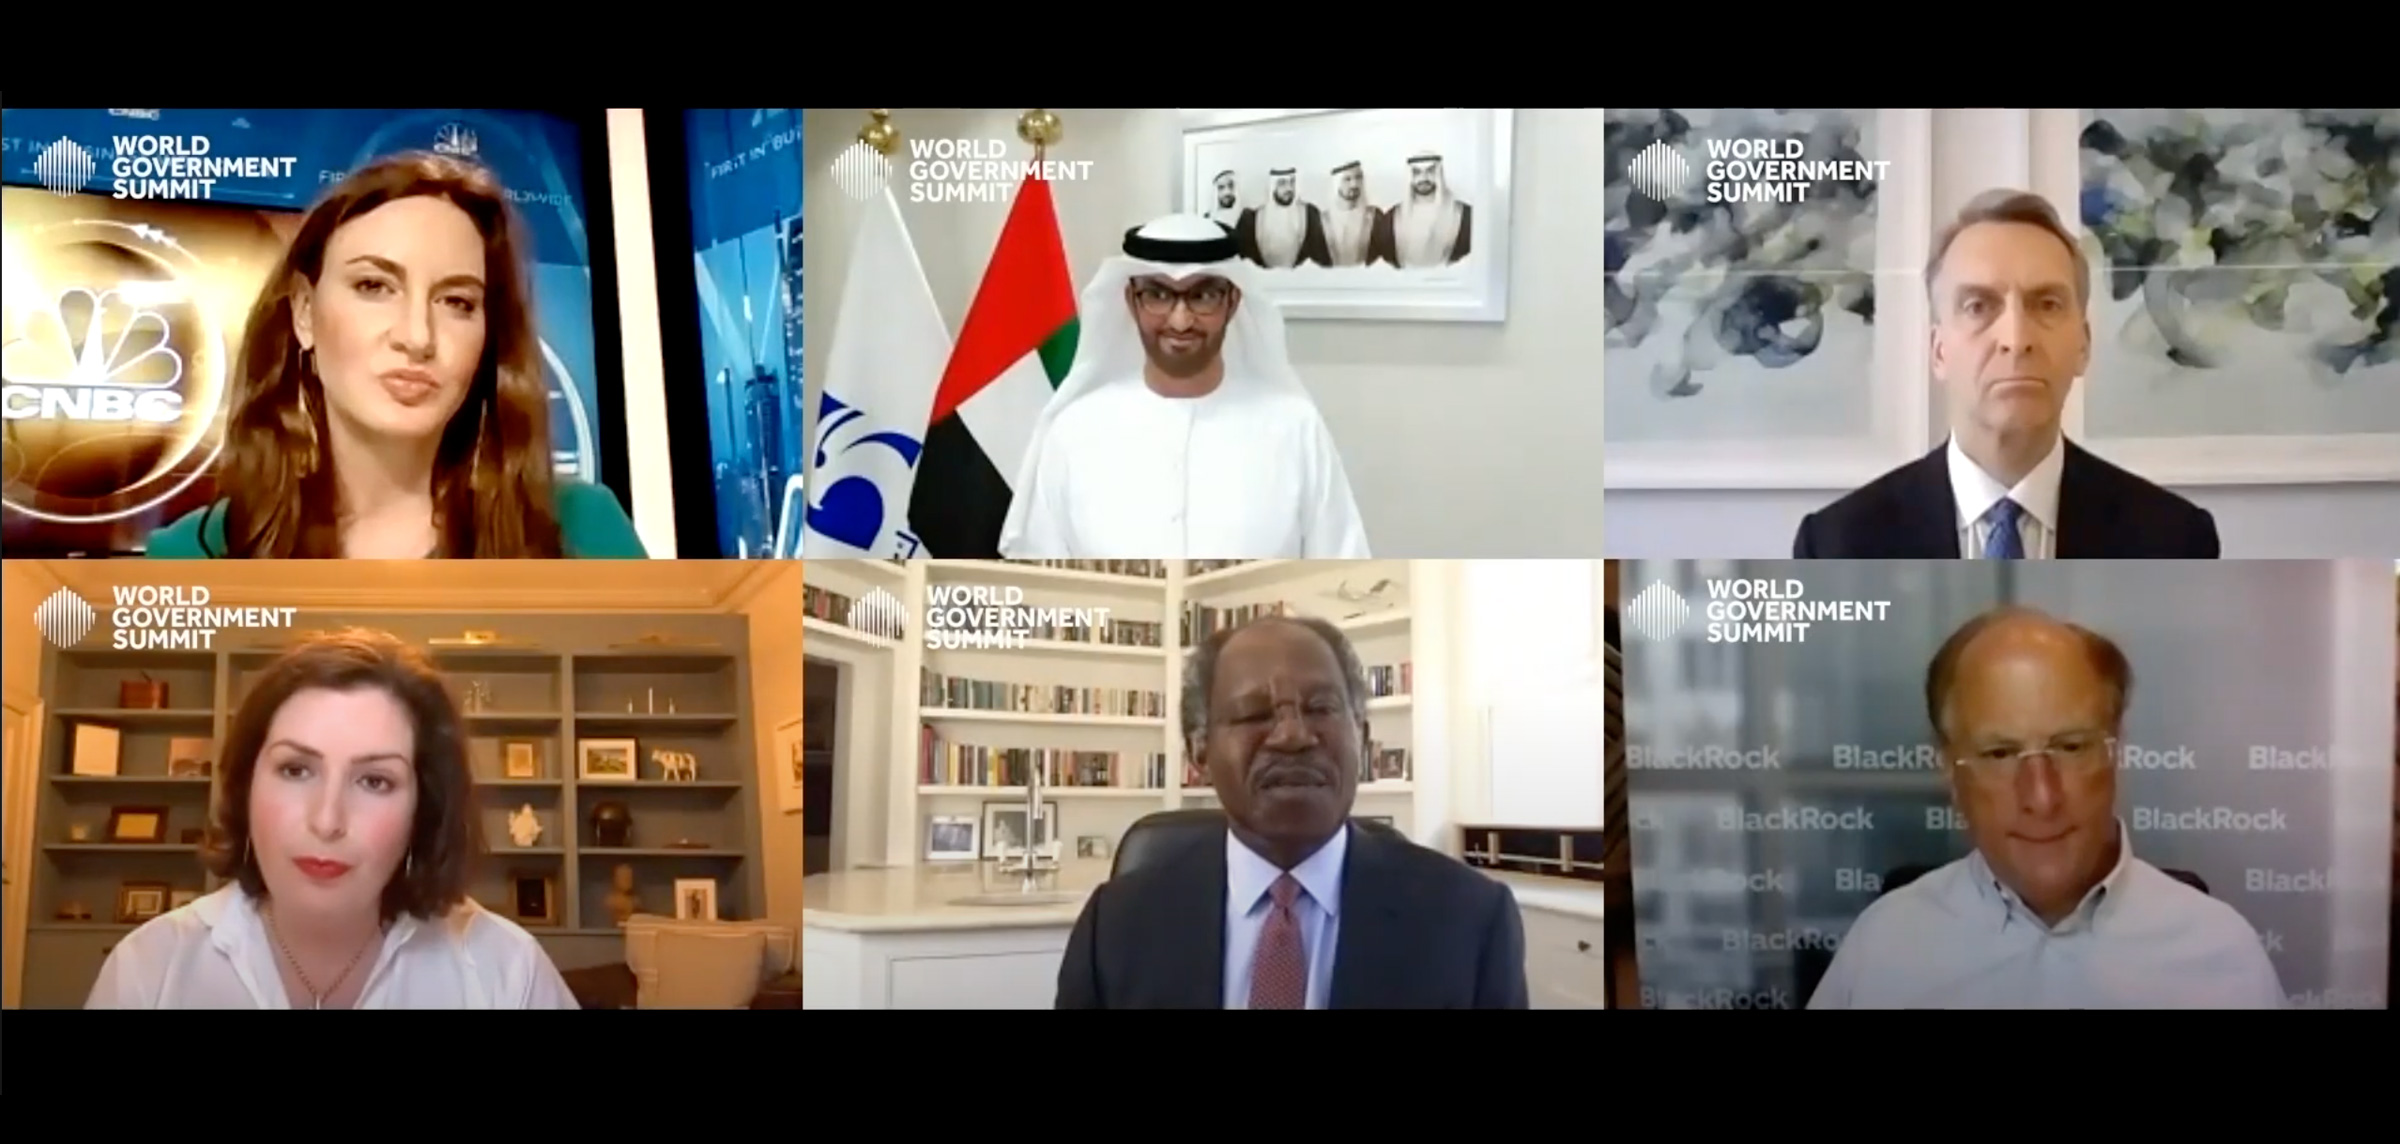 سلطان الجابر: الإمارات توفر فرصاً استثمارية جاذبة ومجزية في قطاعات كثيرة للمستثمرين العالميين